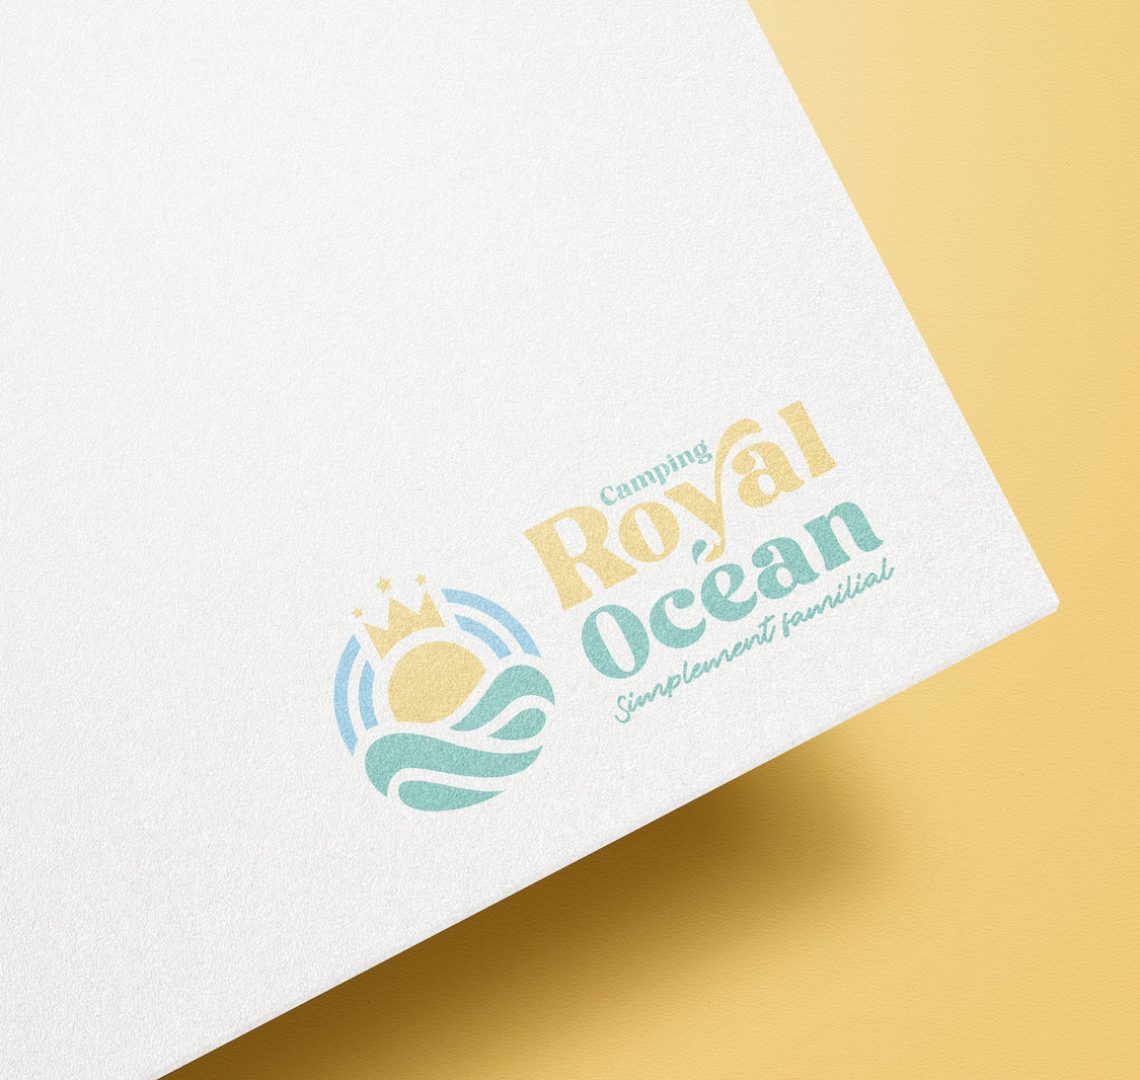 Logo - Royal océan camping